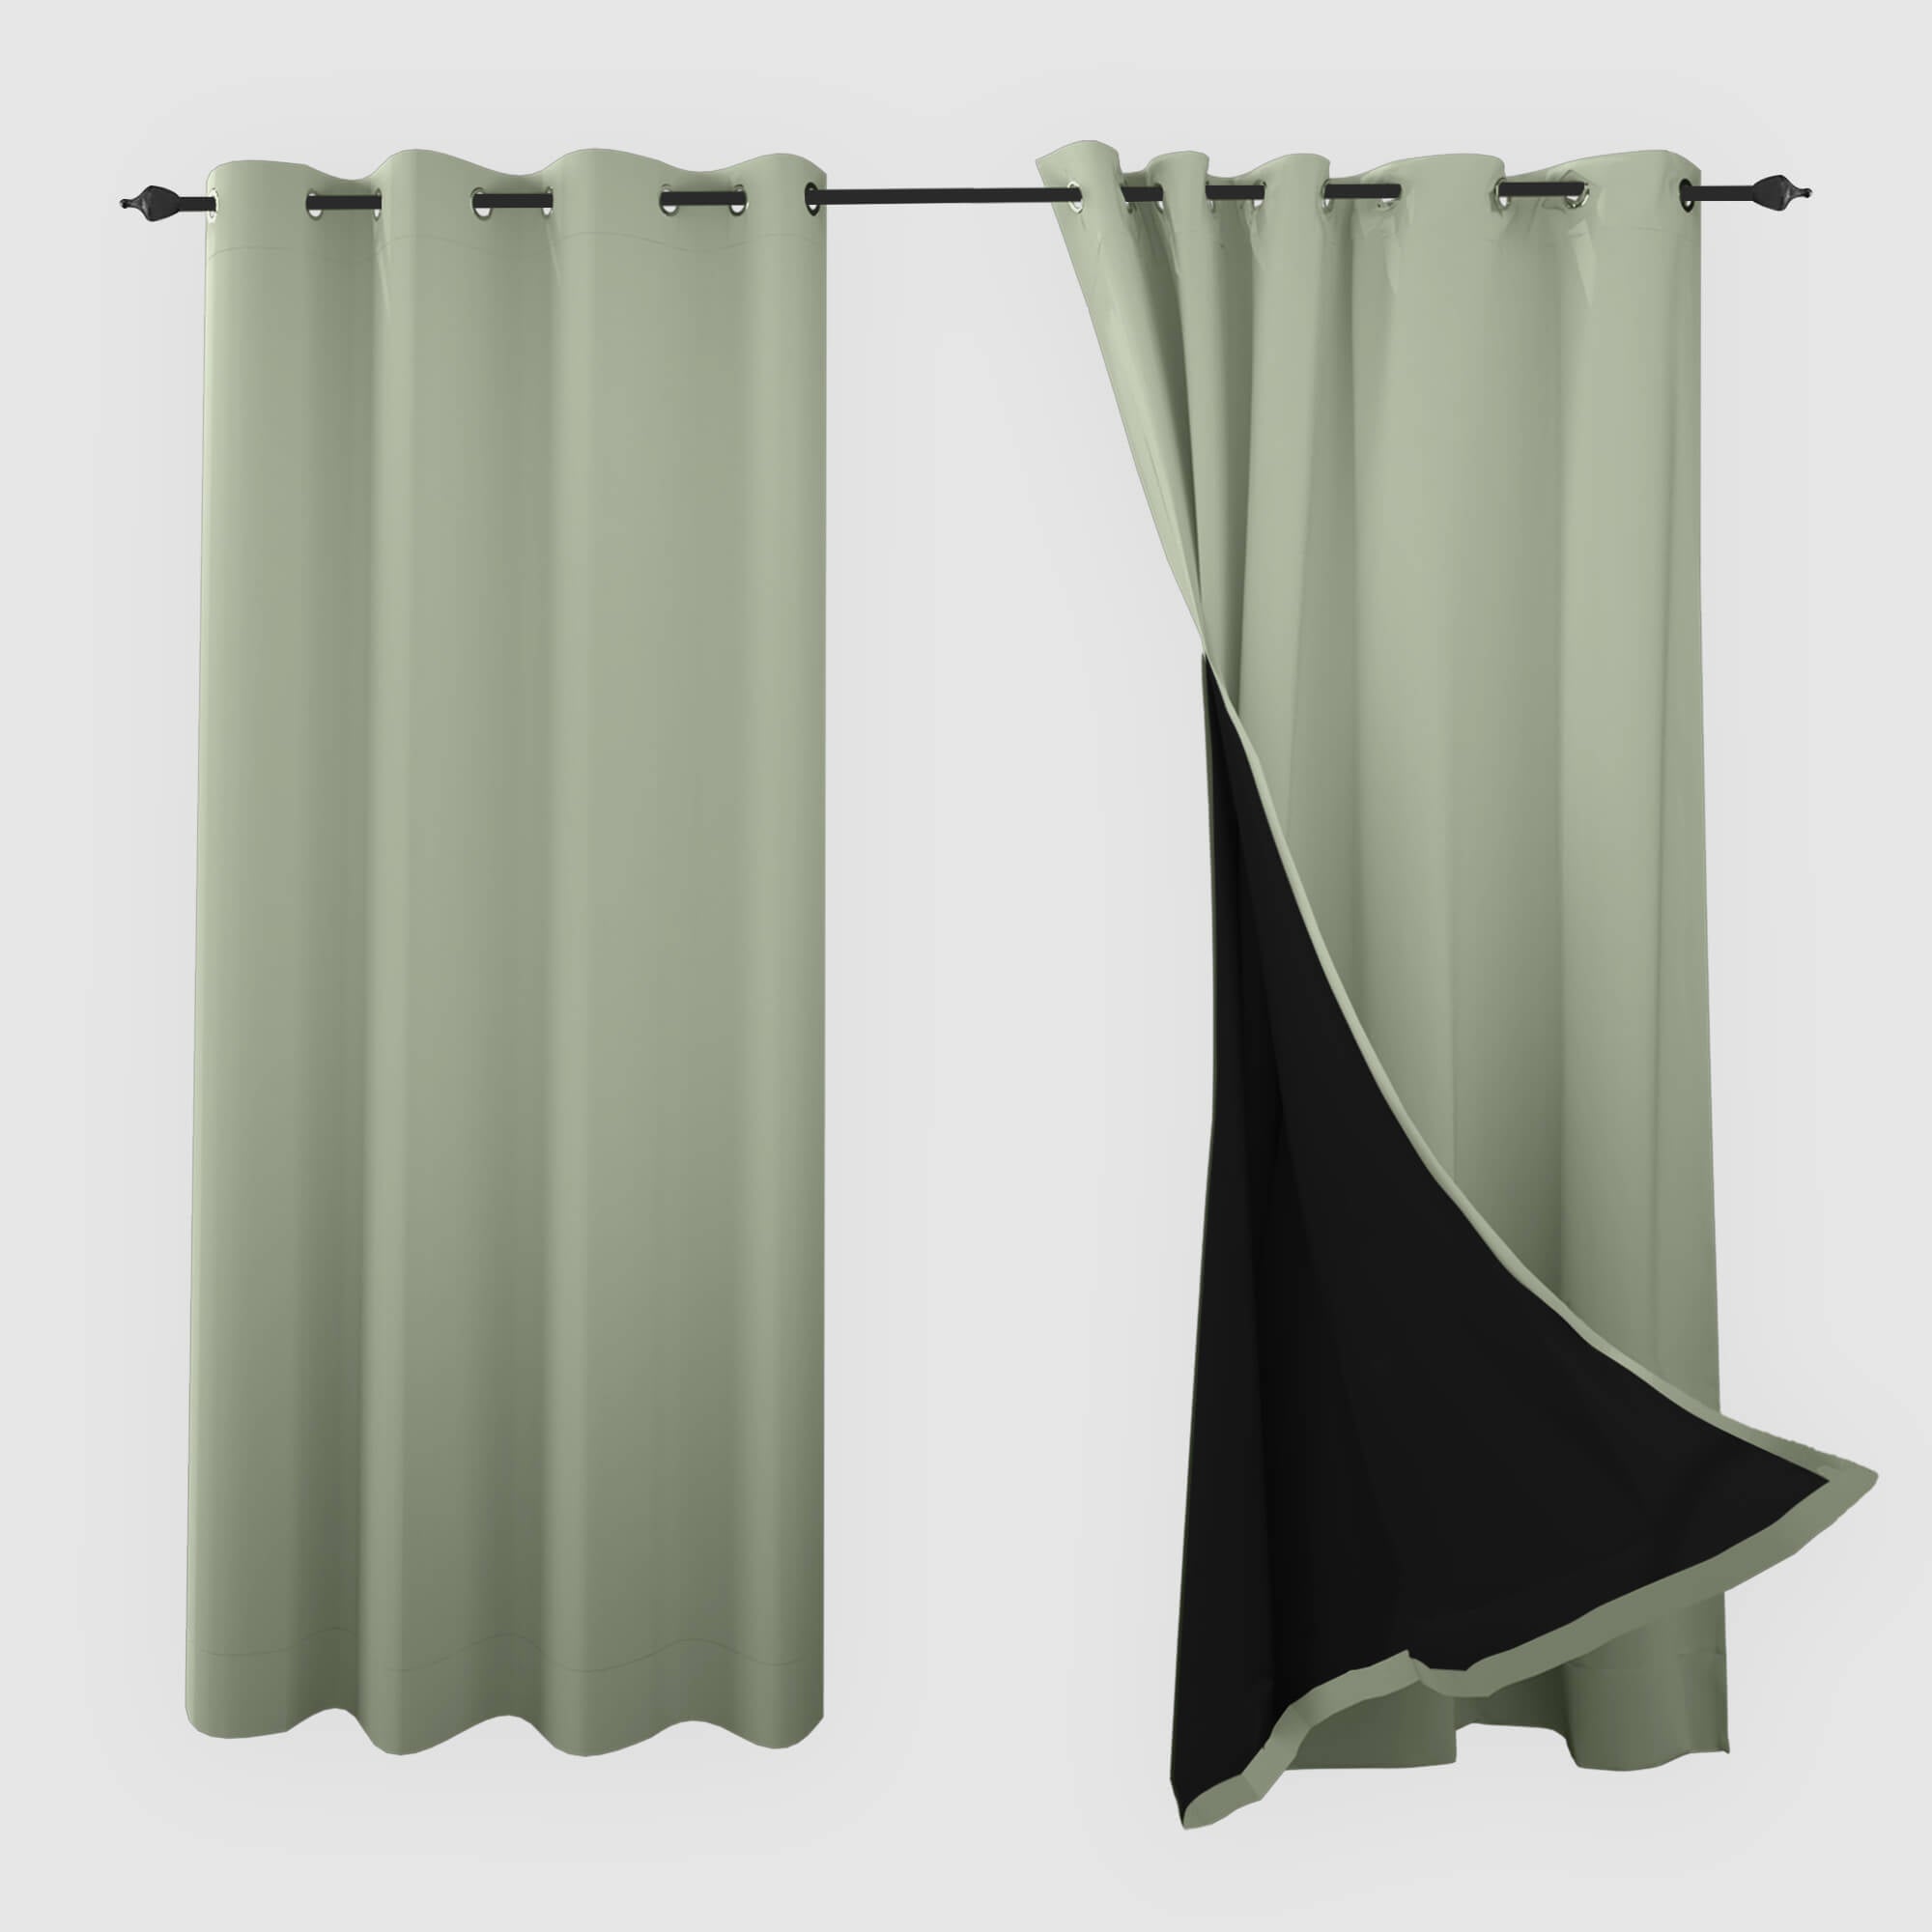 SNOWCITY Blackout Curtains Mint Green - Grommet Top